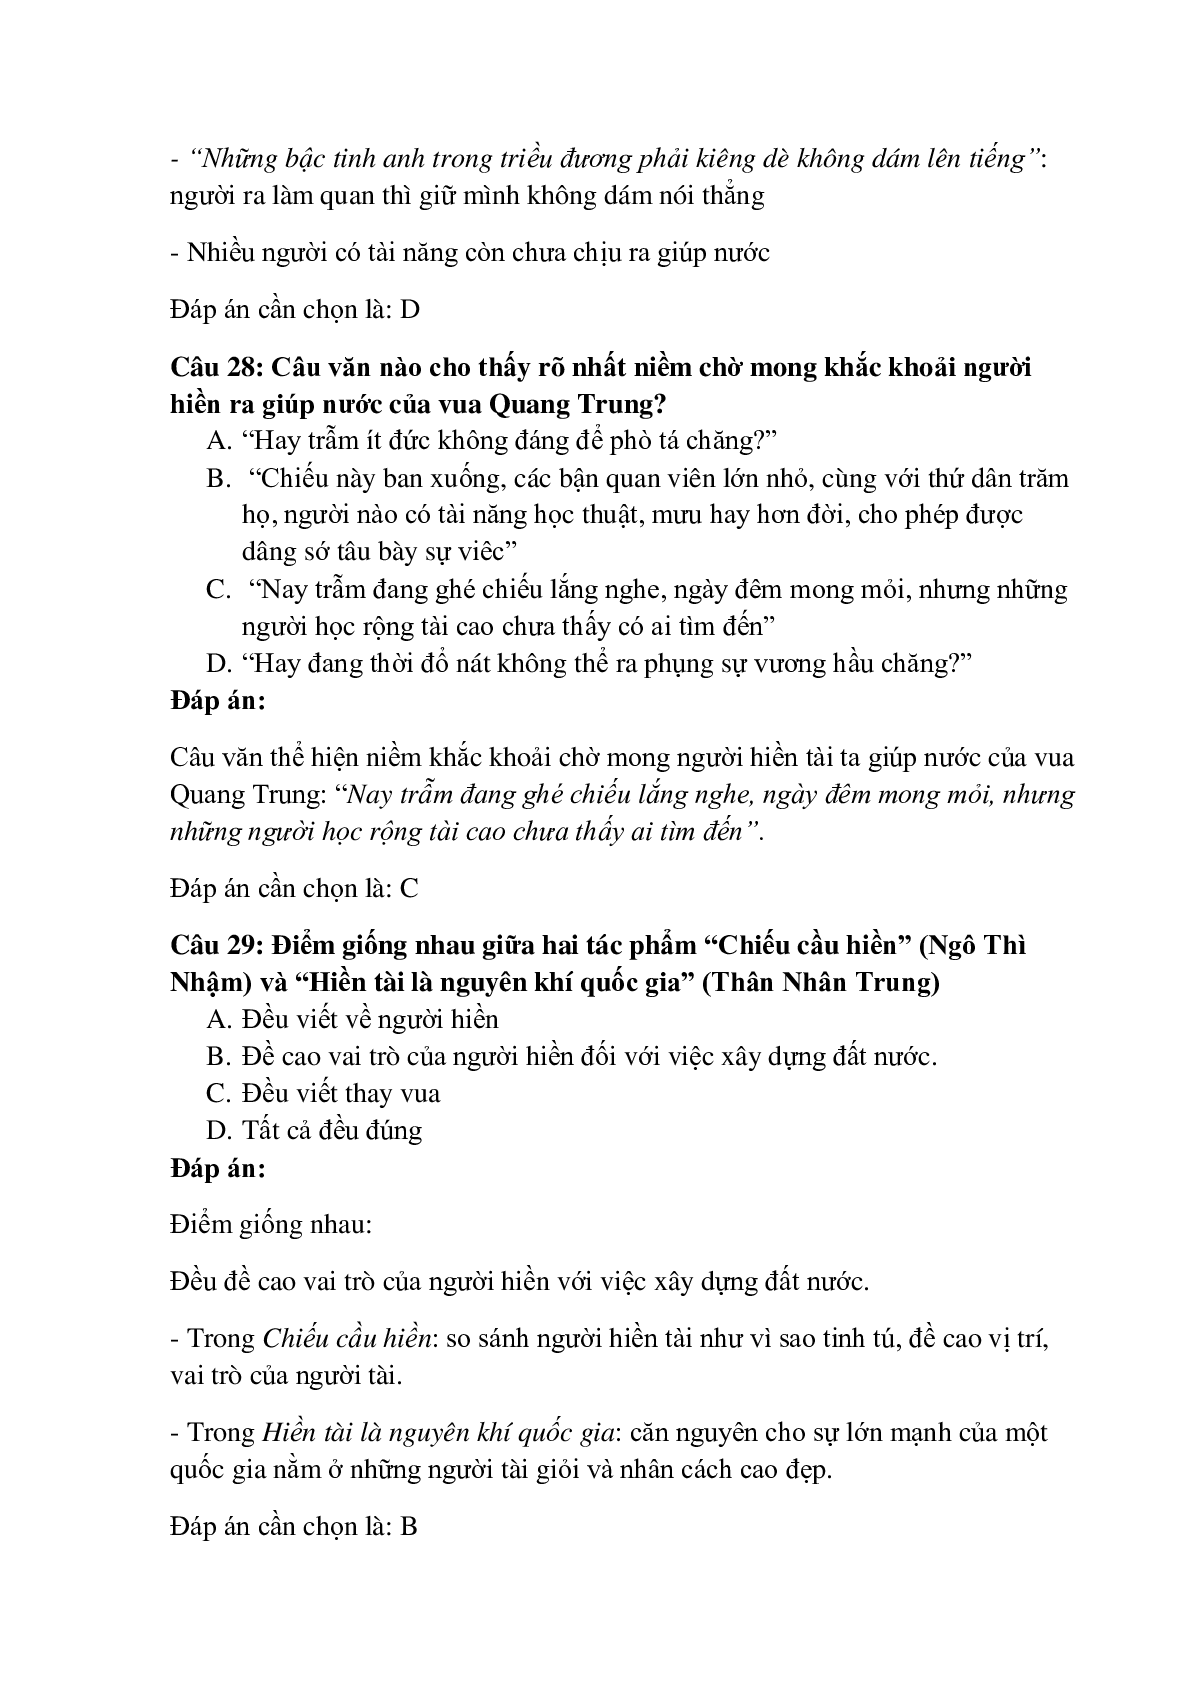 29 câu Trắc nghiệm Chiếu cầu hiền (Ngô Thì Nhậm) có đáp án 2023 – Ngữ Văn lớp 11 (trang 10)